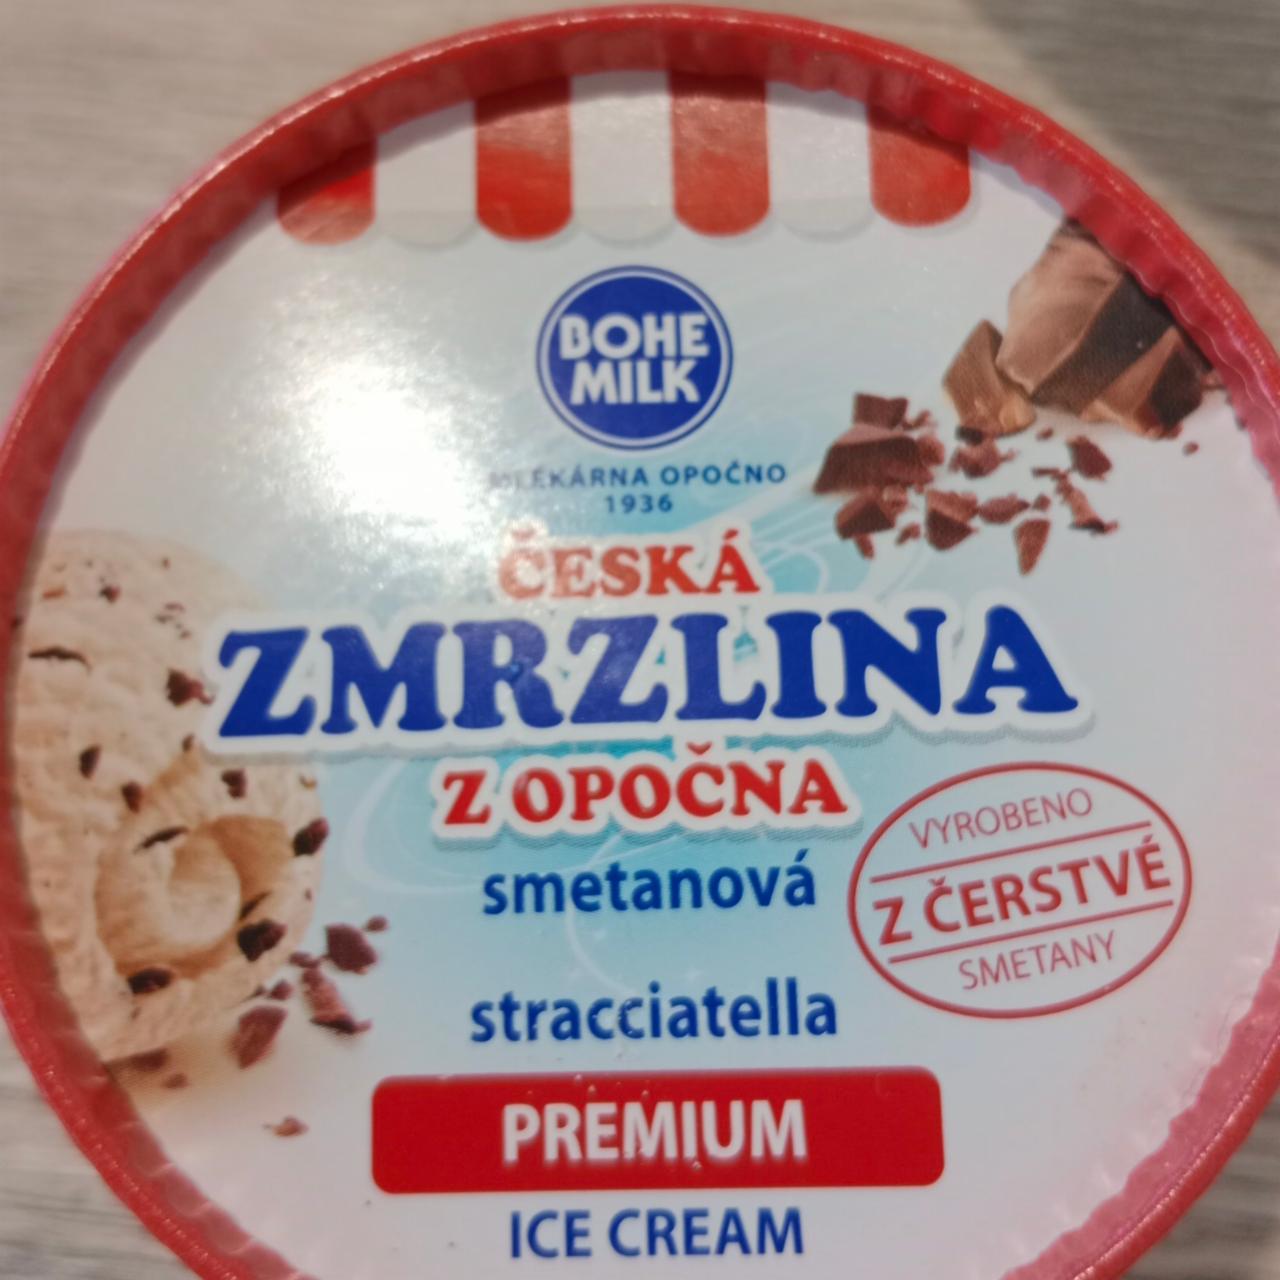 Fotografie - Česká zmrzlina z Opočna smetanová stracciatella premium Bohemilk